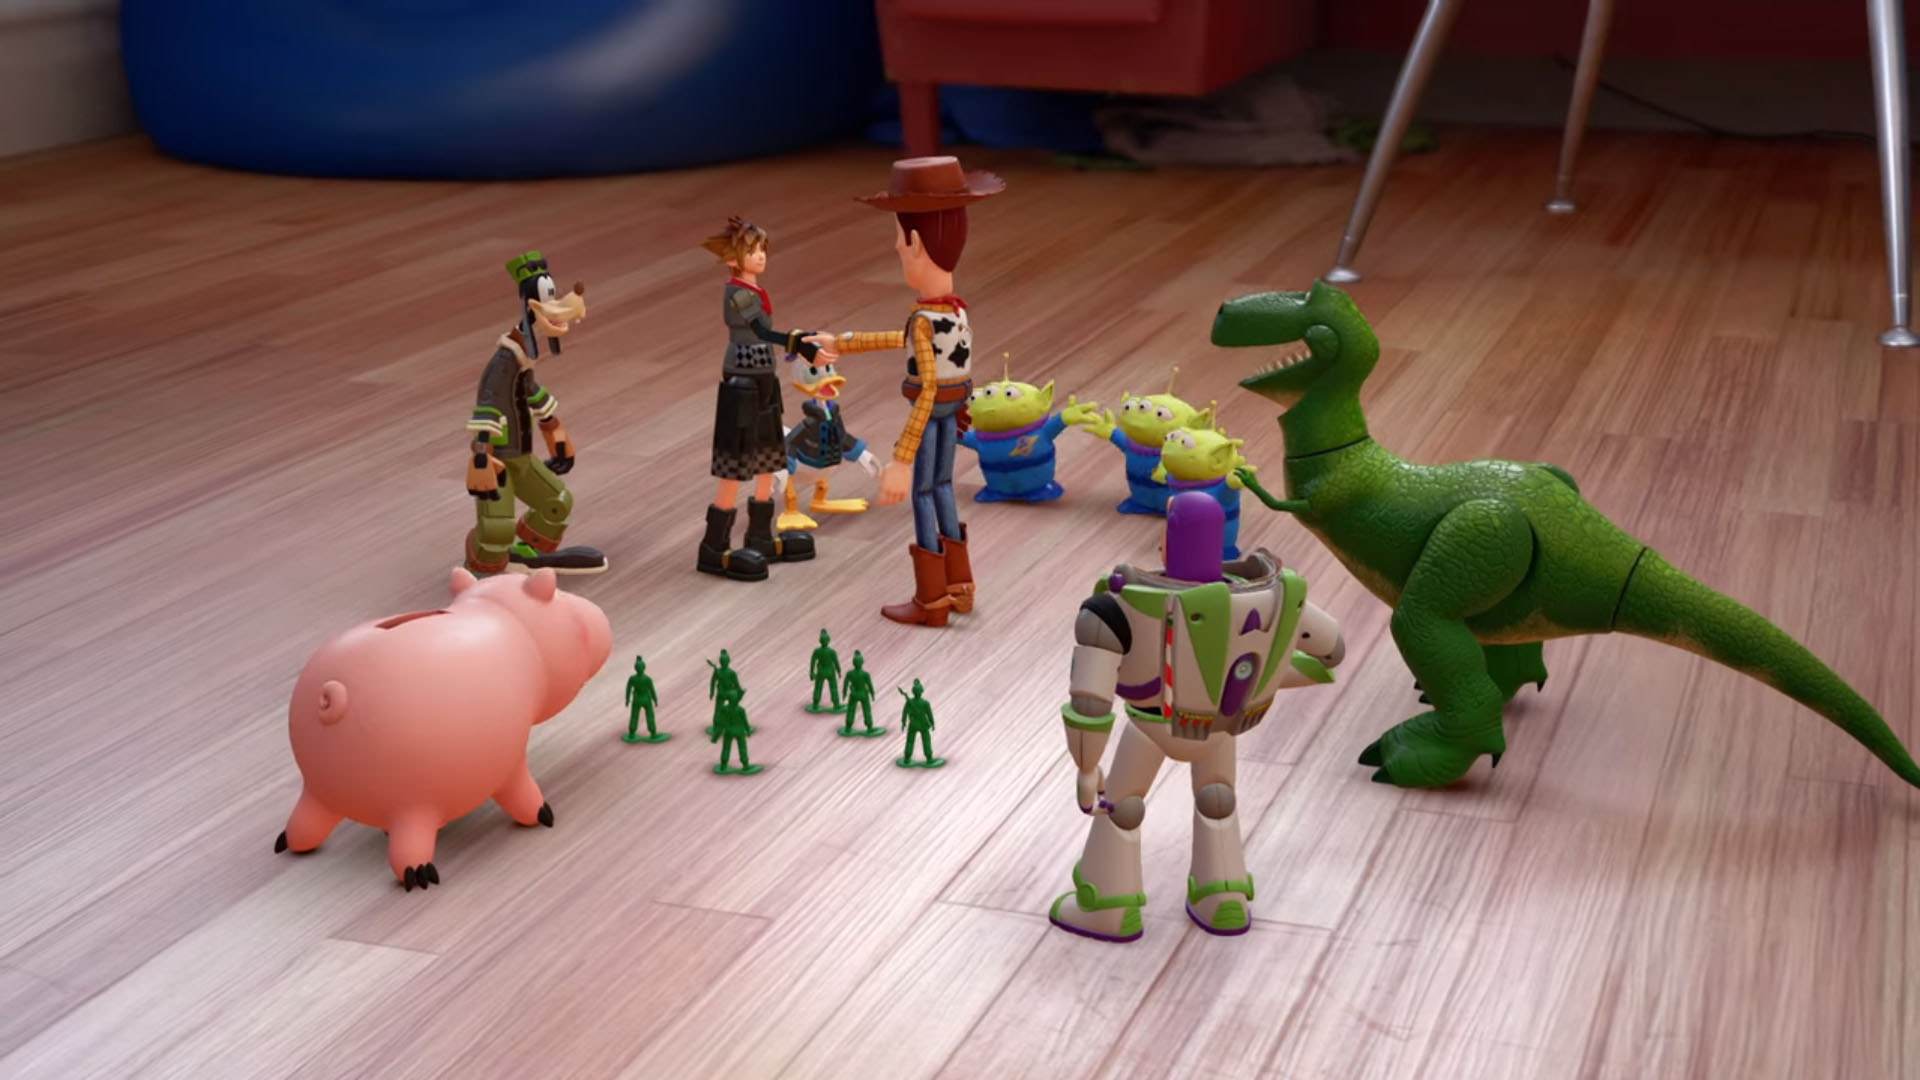 Gặp gỡ các nhận vật Toy Story trong trailer mới của Kingdom Hearts III – Tin Game